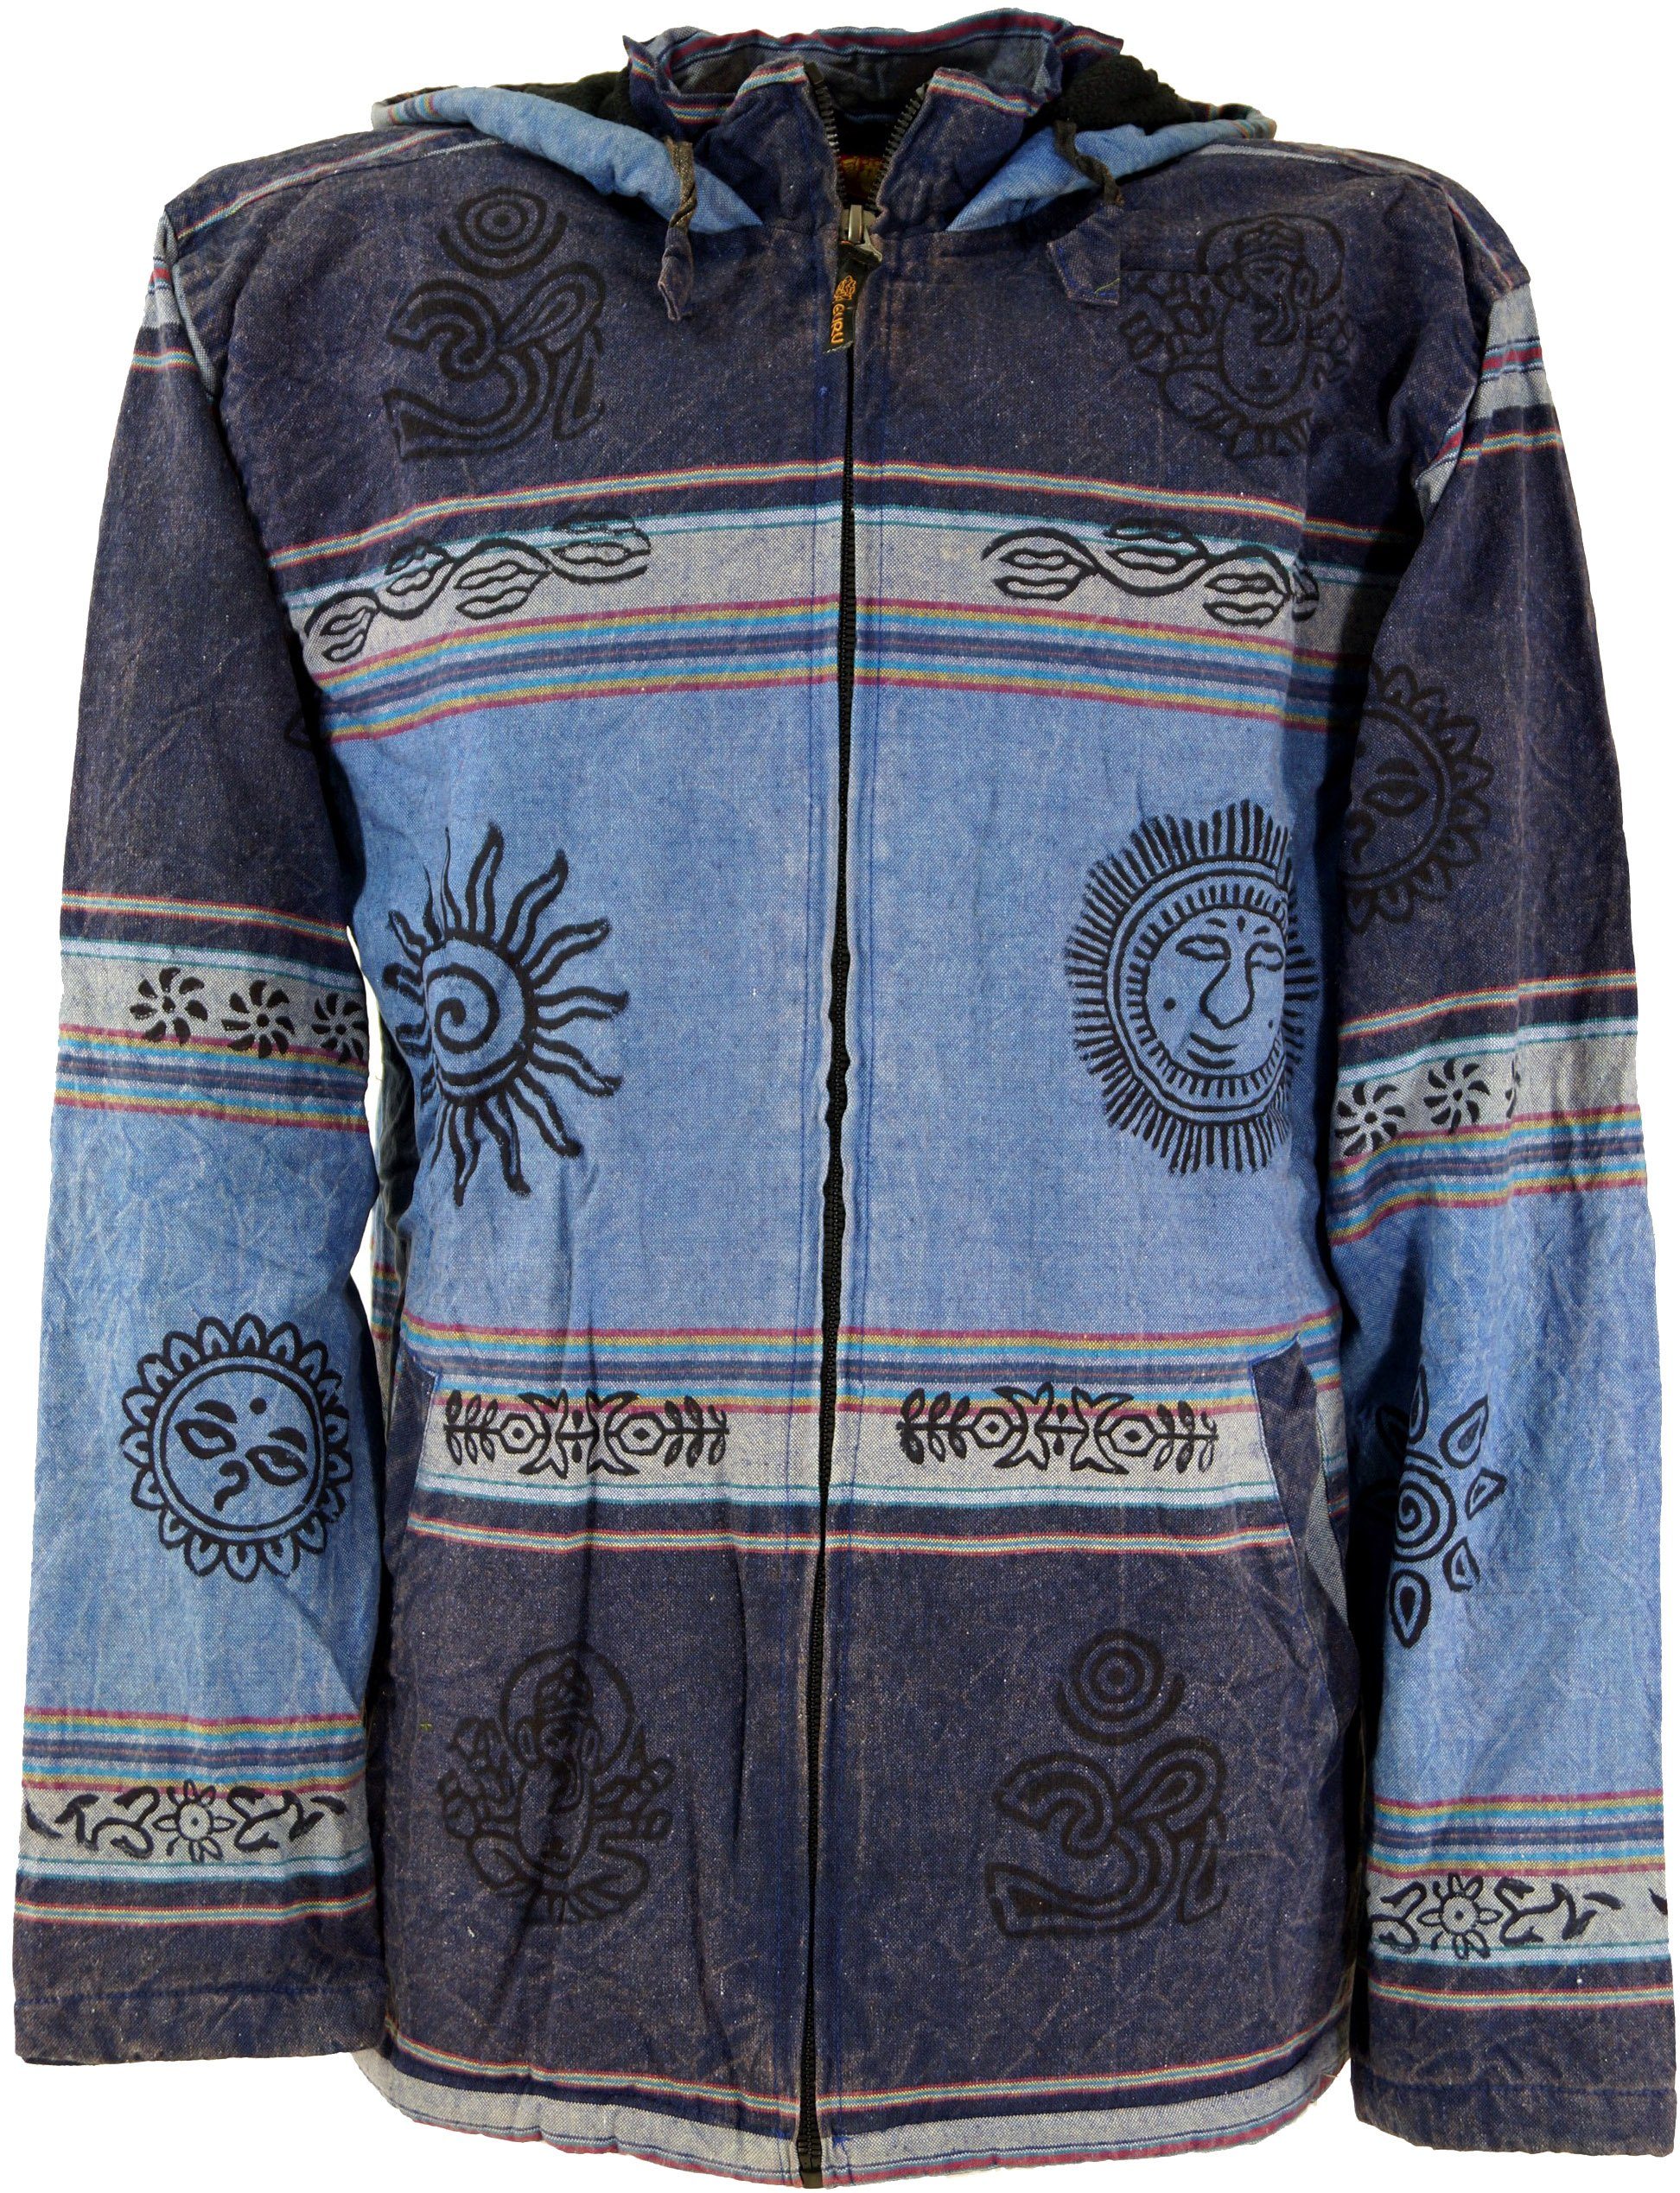 Guru-Shop Strickjacke Goa Jacke, Ethno Kapuzen Jacke - blau alternative Bekleidung